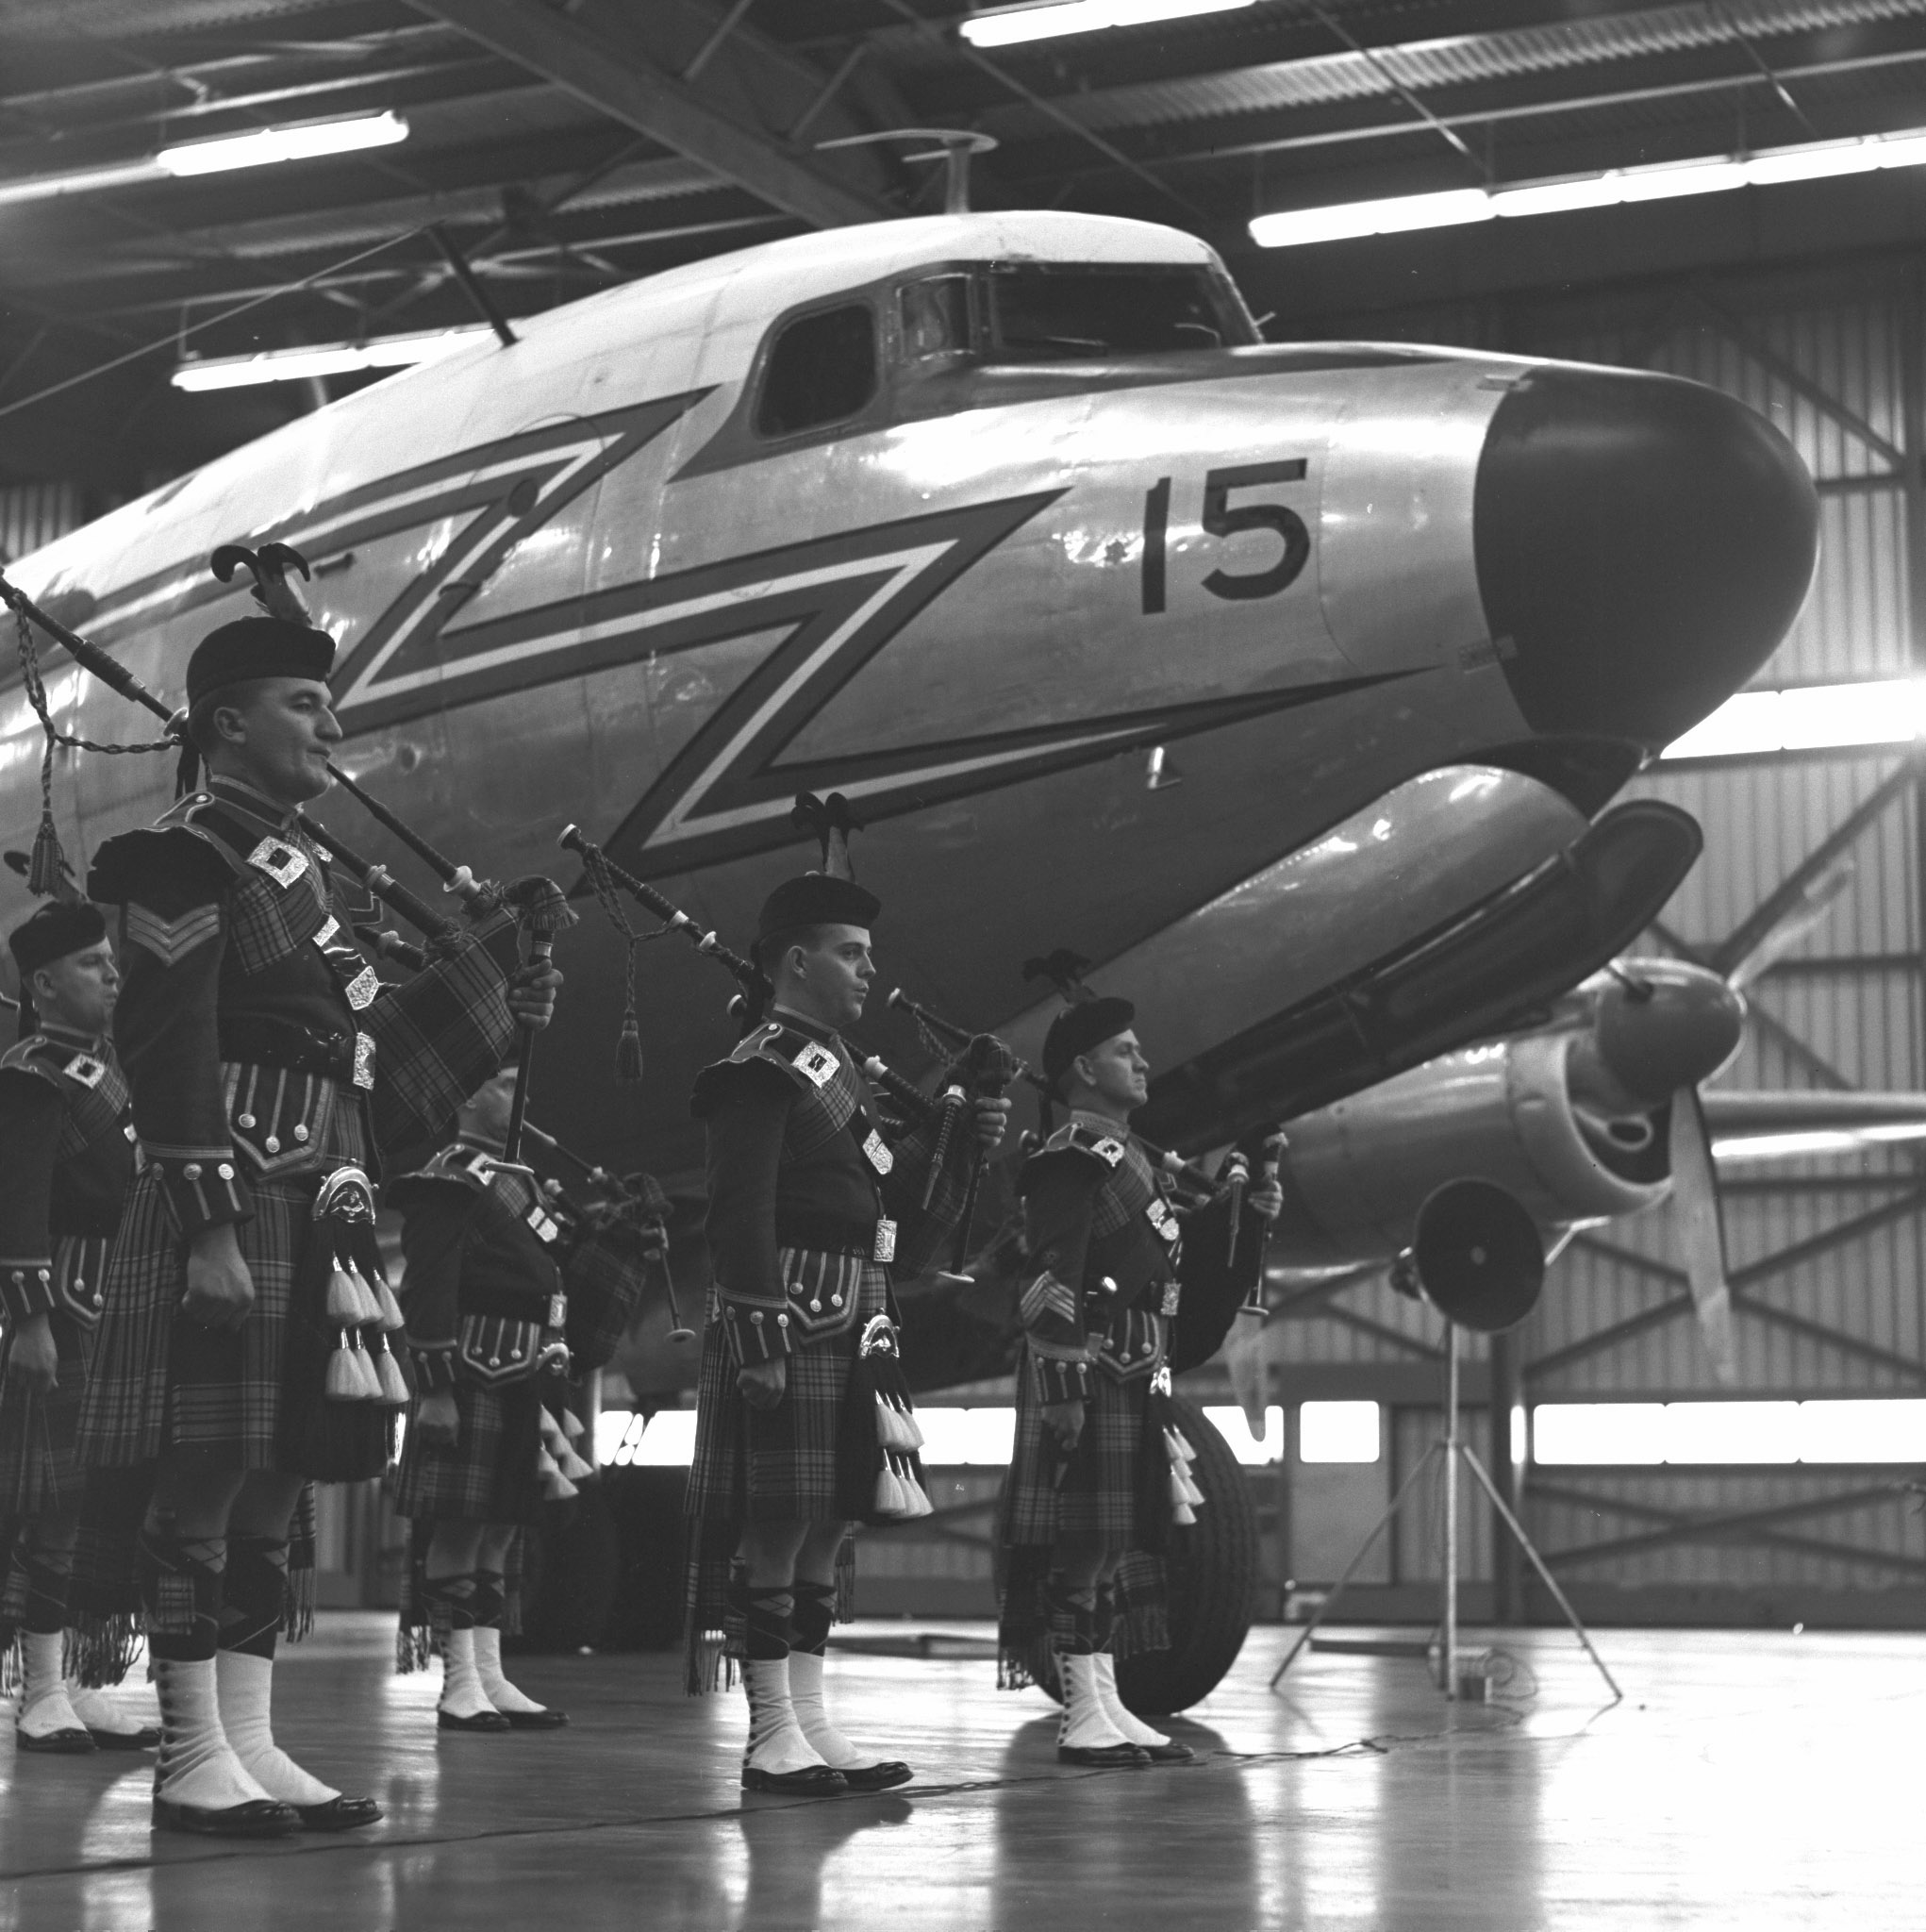 Des militaires du Corps de cornemuses de l’ARC se tiennent devant le dernier North Star de l’ARC pendant la cérémonie de retrait du service de l’avion. PHOTO : Archives du MDN, Z-10578-2